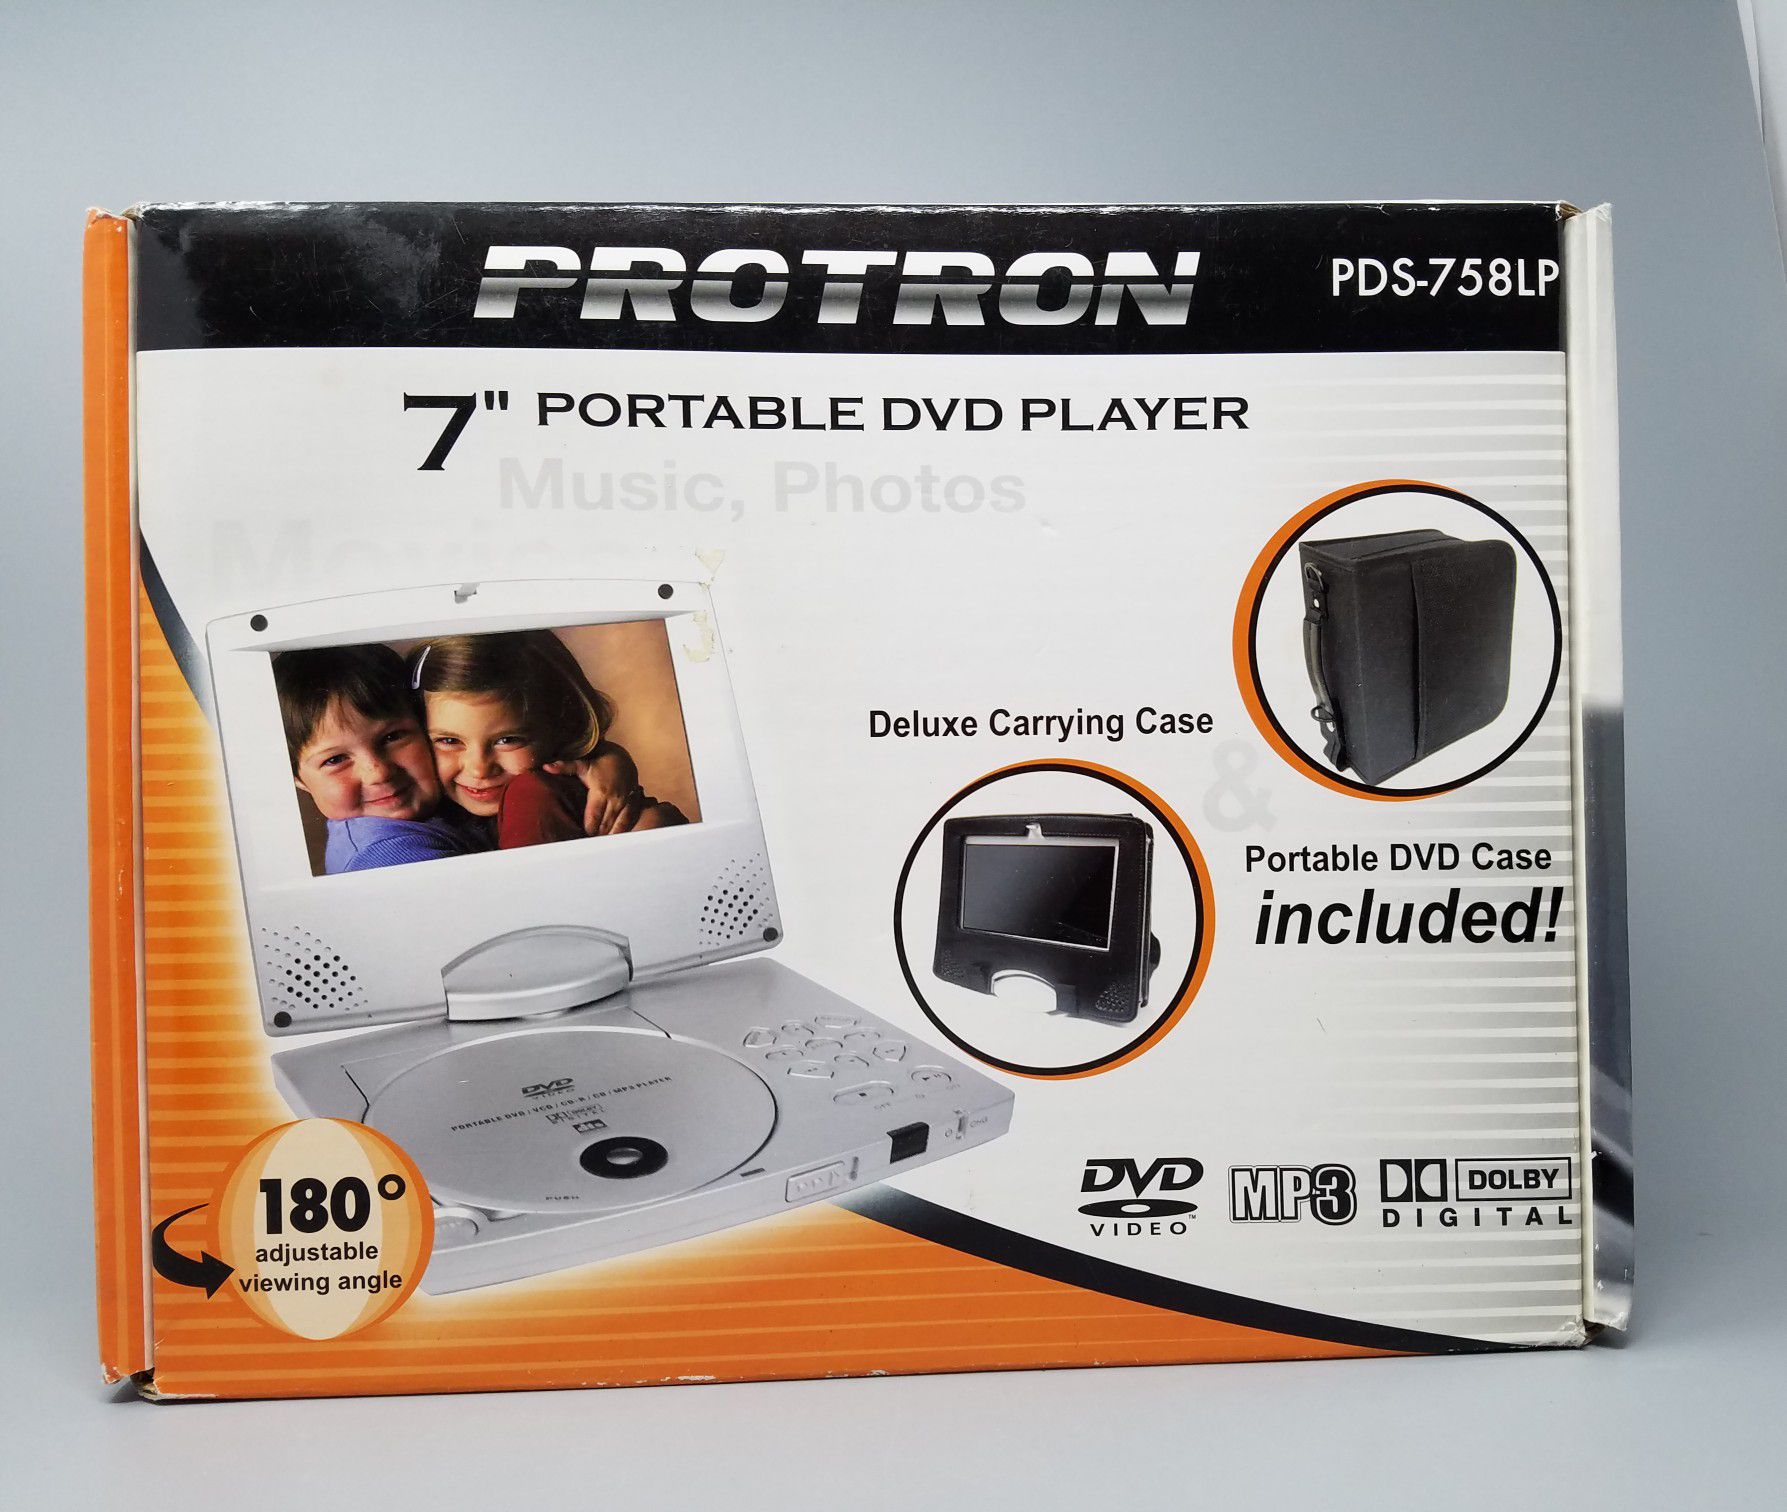 Protron 7" Portable DVD Player